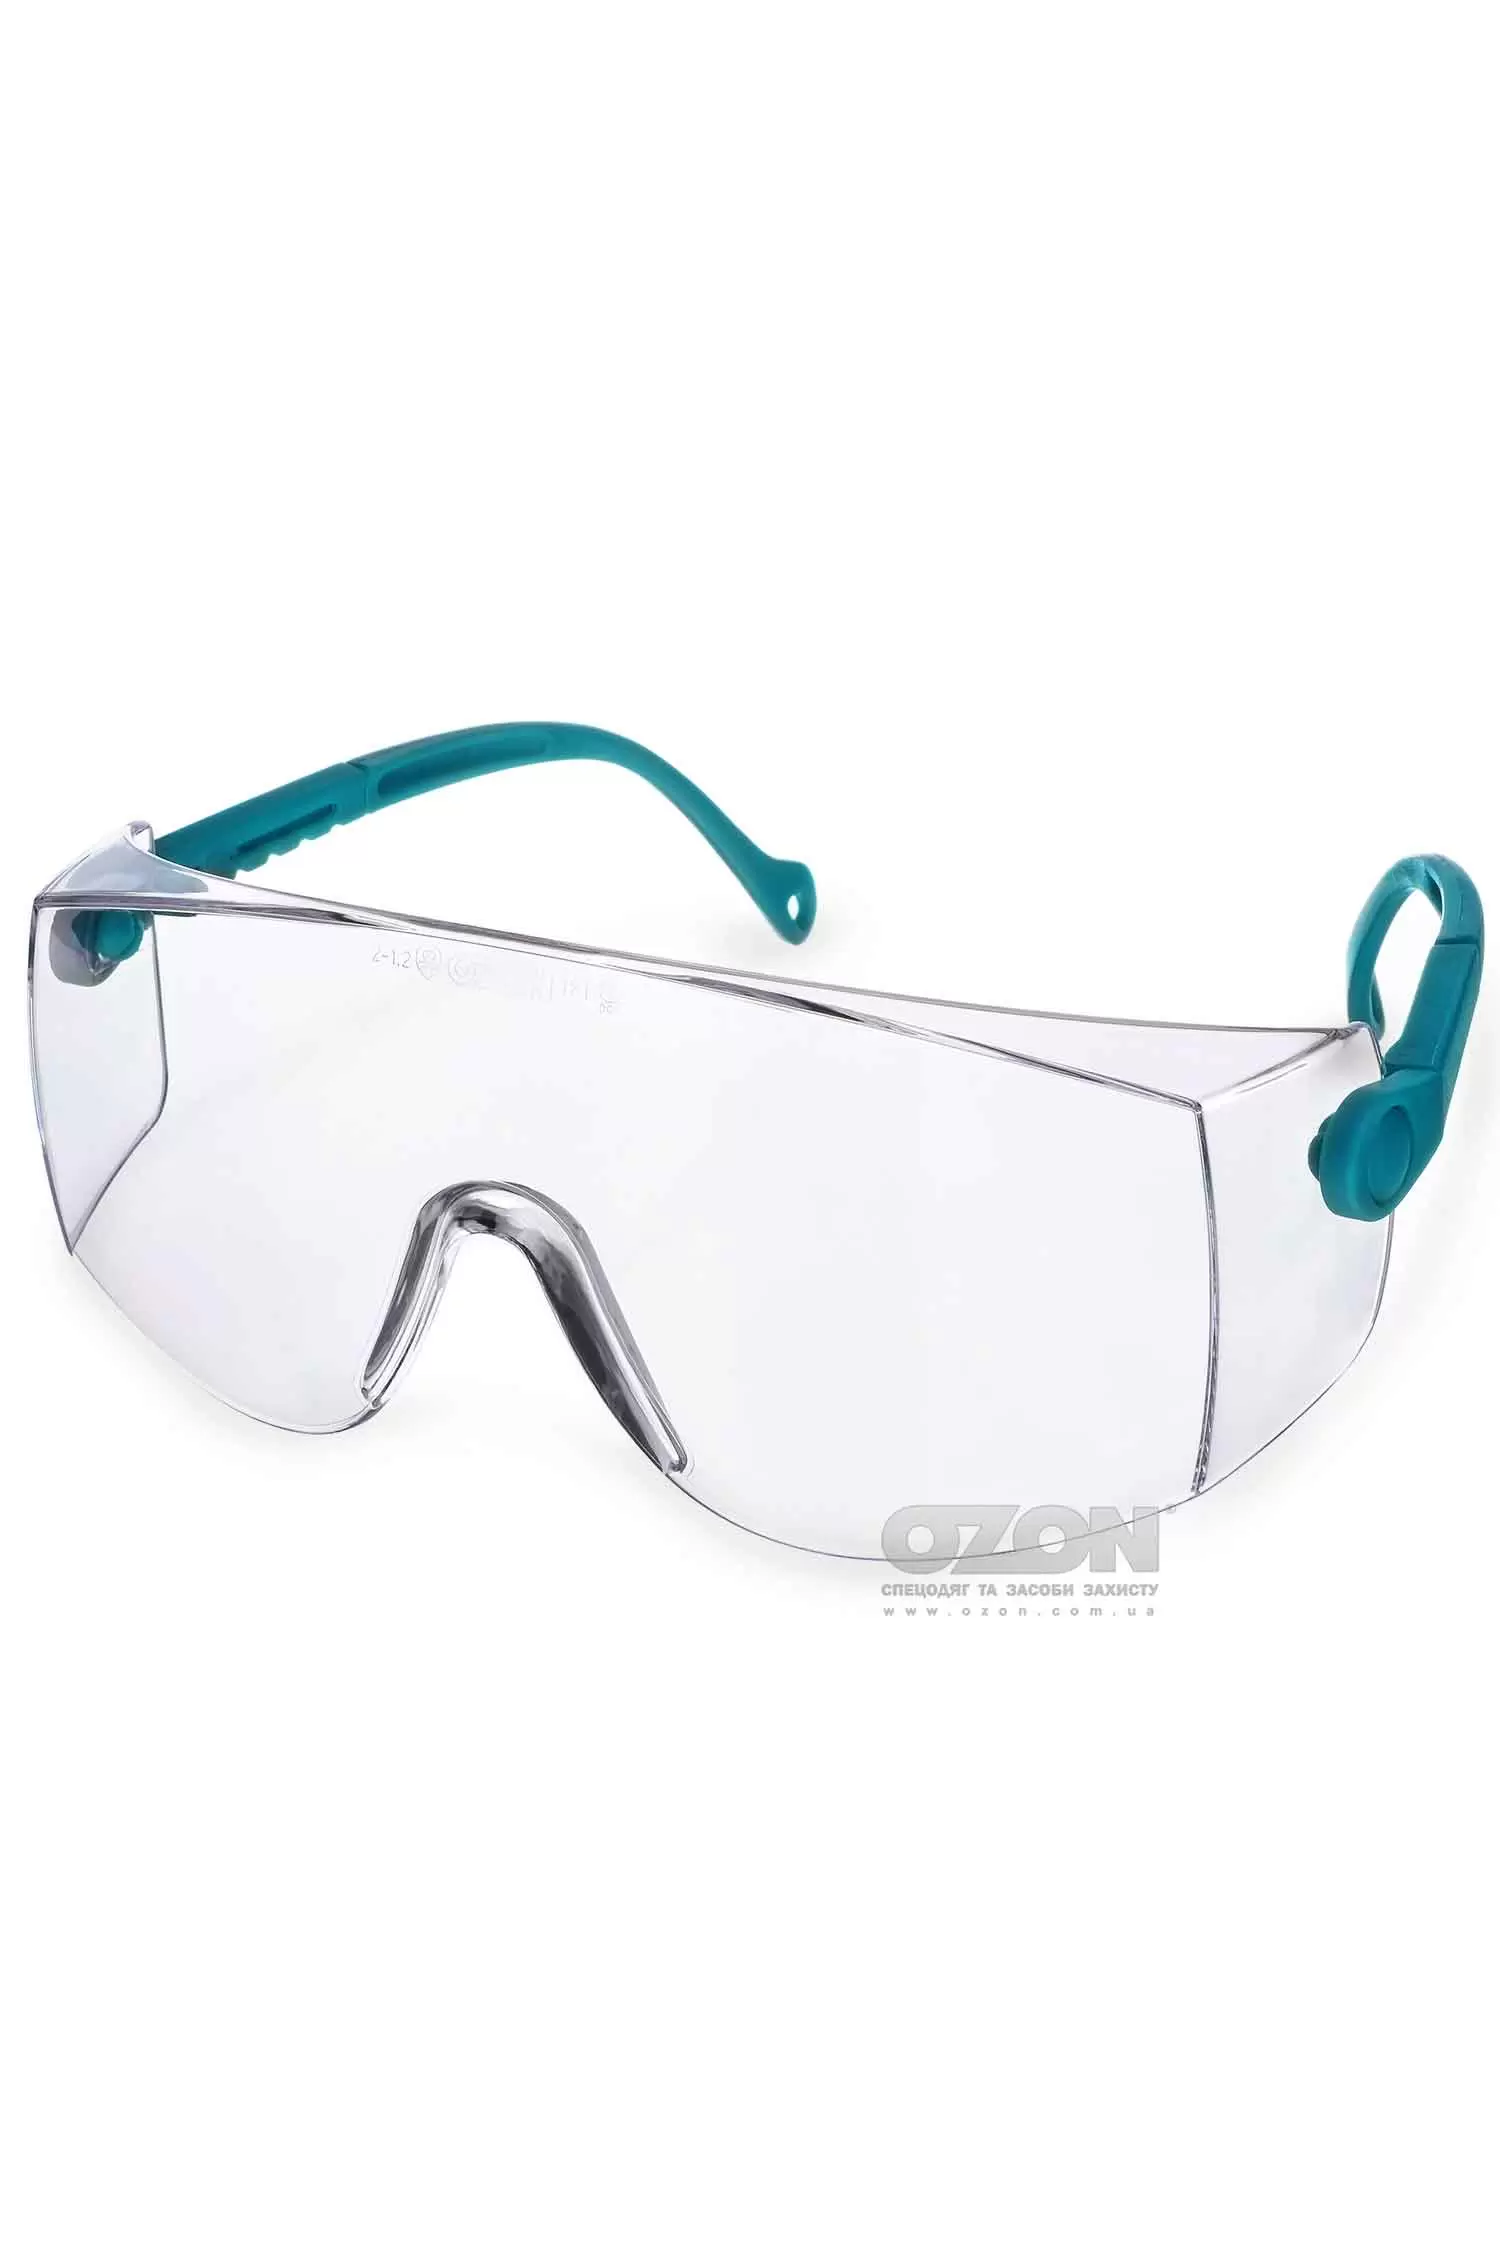 Защитные очки OZON™ 7-034 A/F - Фото 1